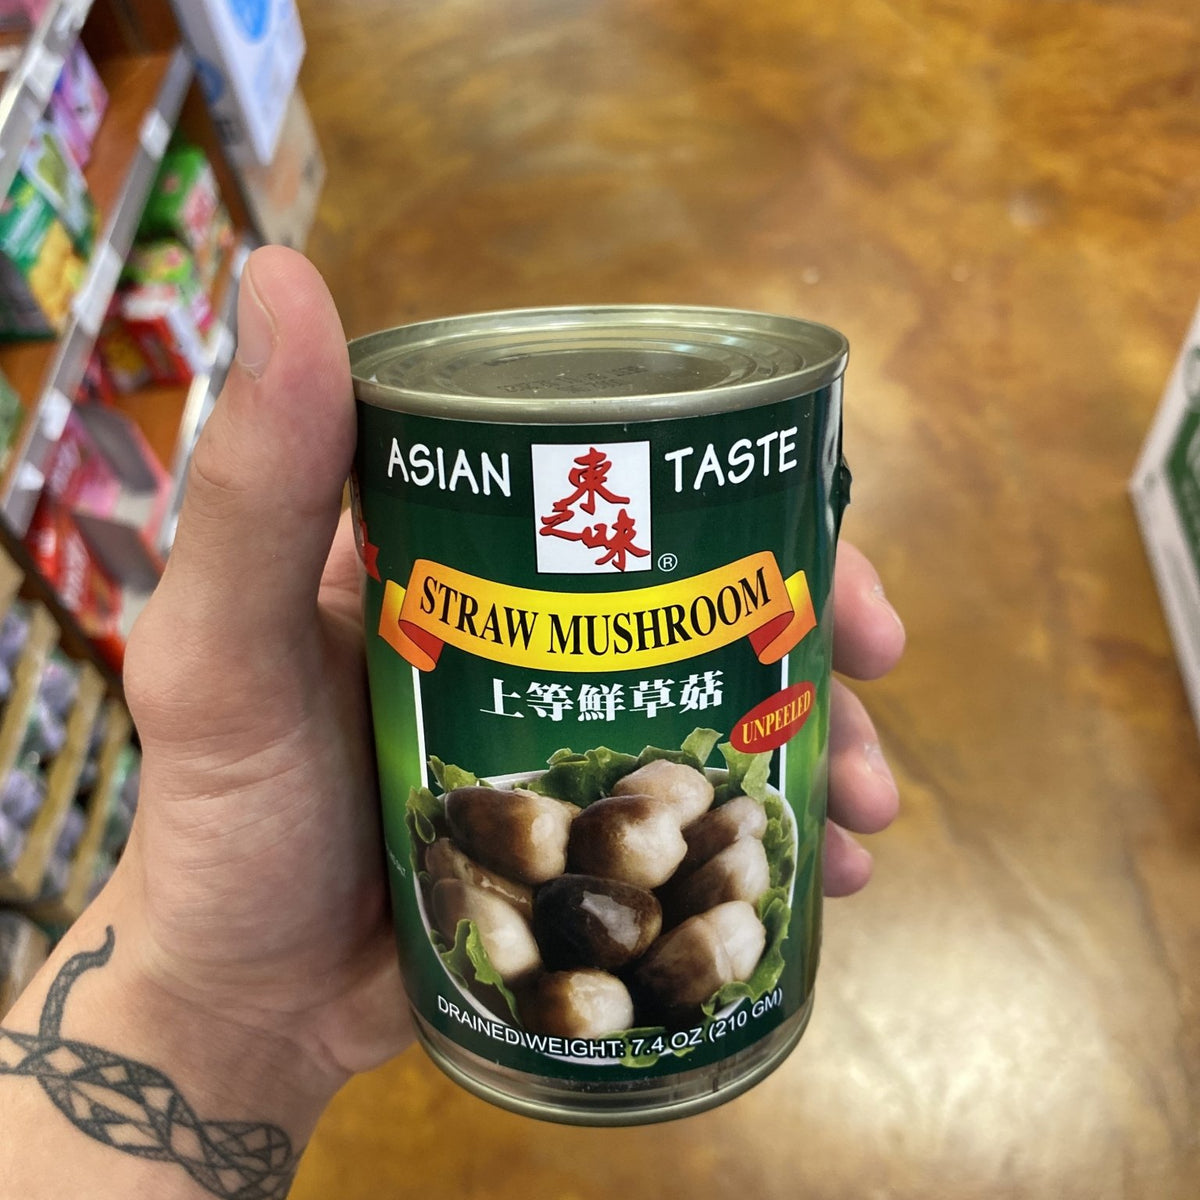 Asian Taste Straw Mushroom Unpeeled, 15oz — Eastside Asian Market